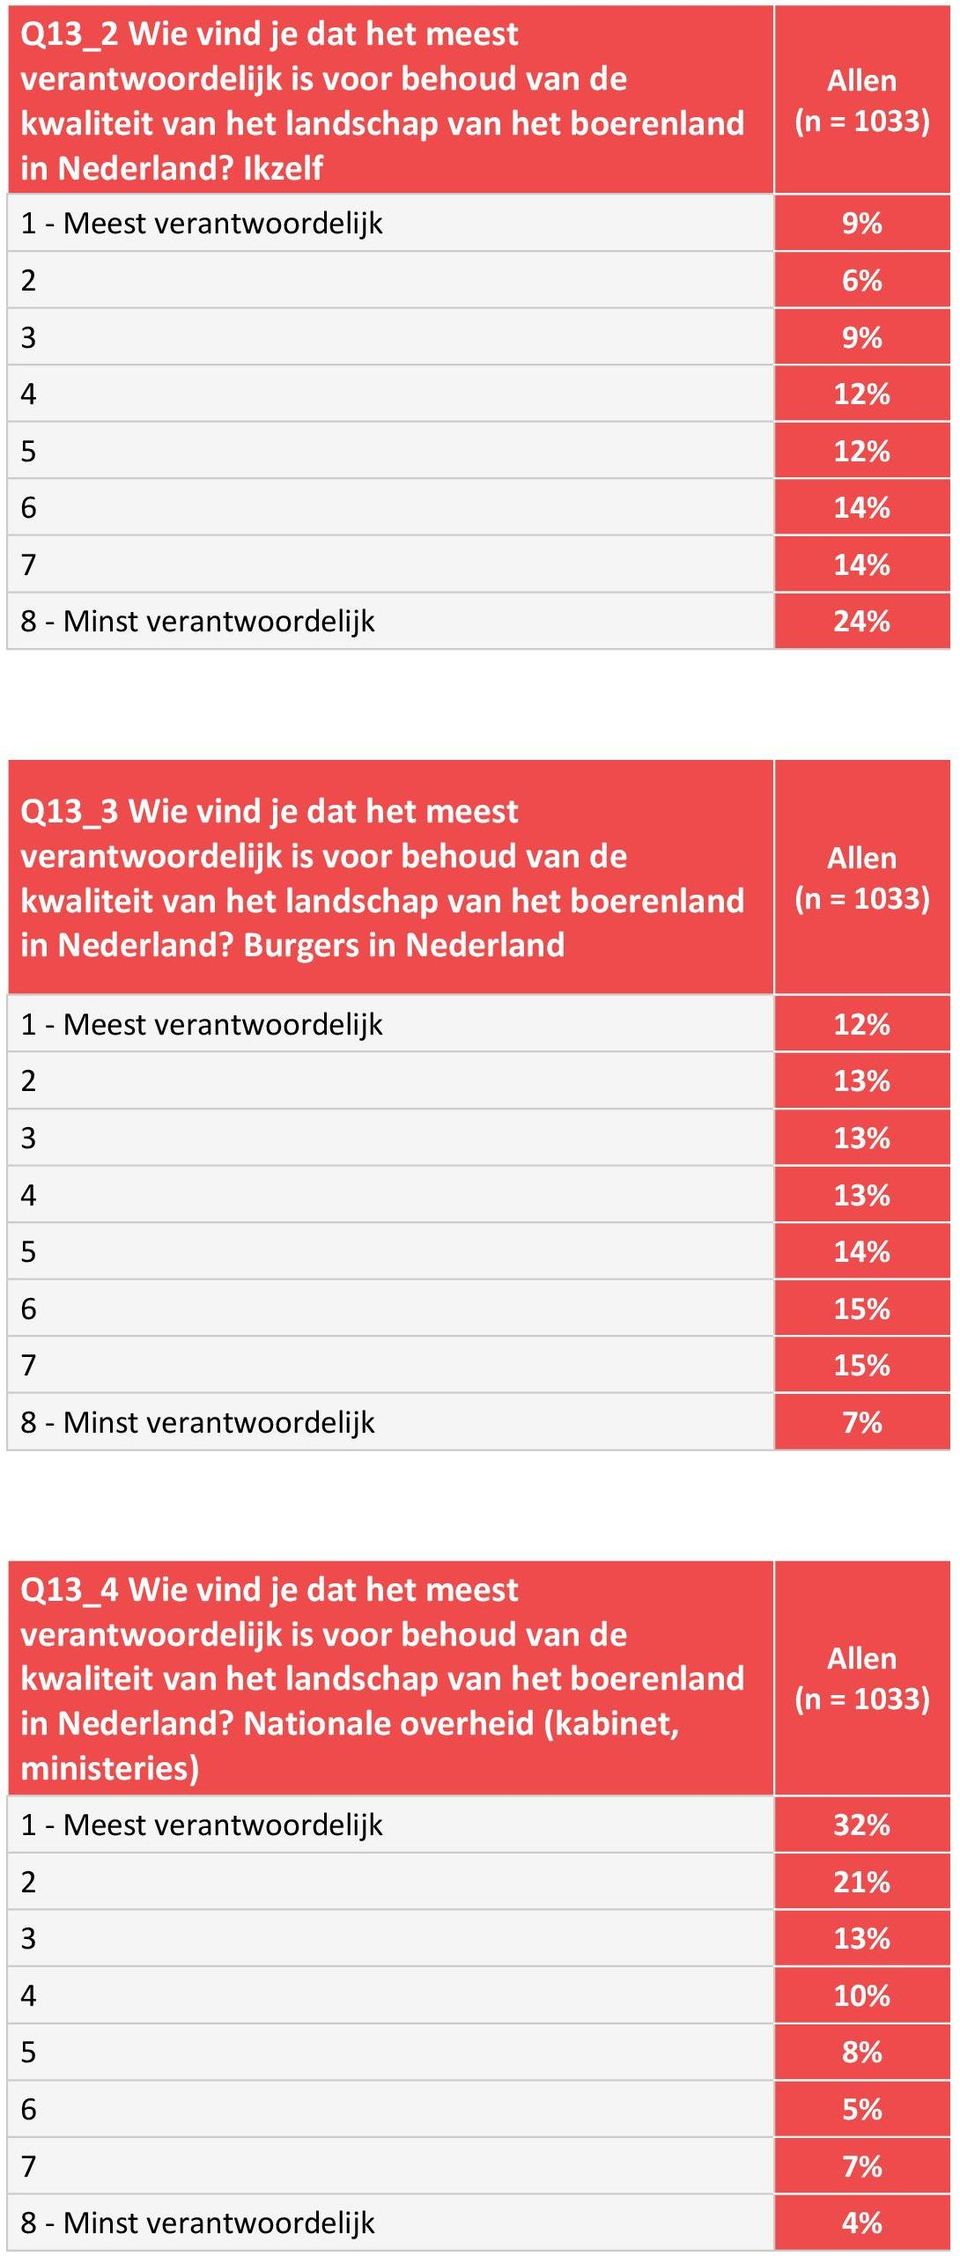 het meest in Nederland?